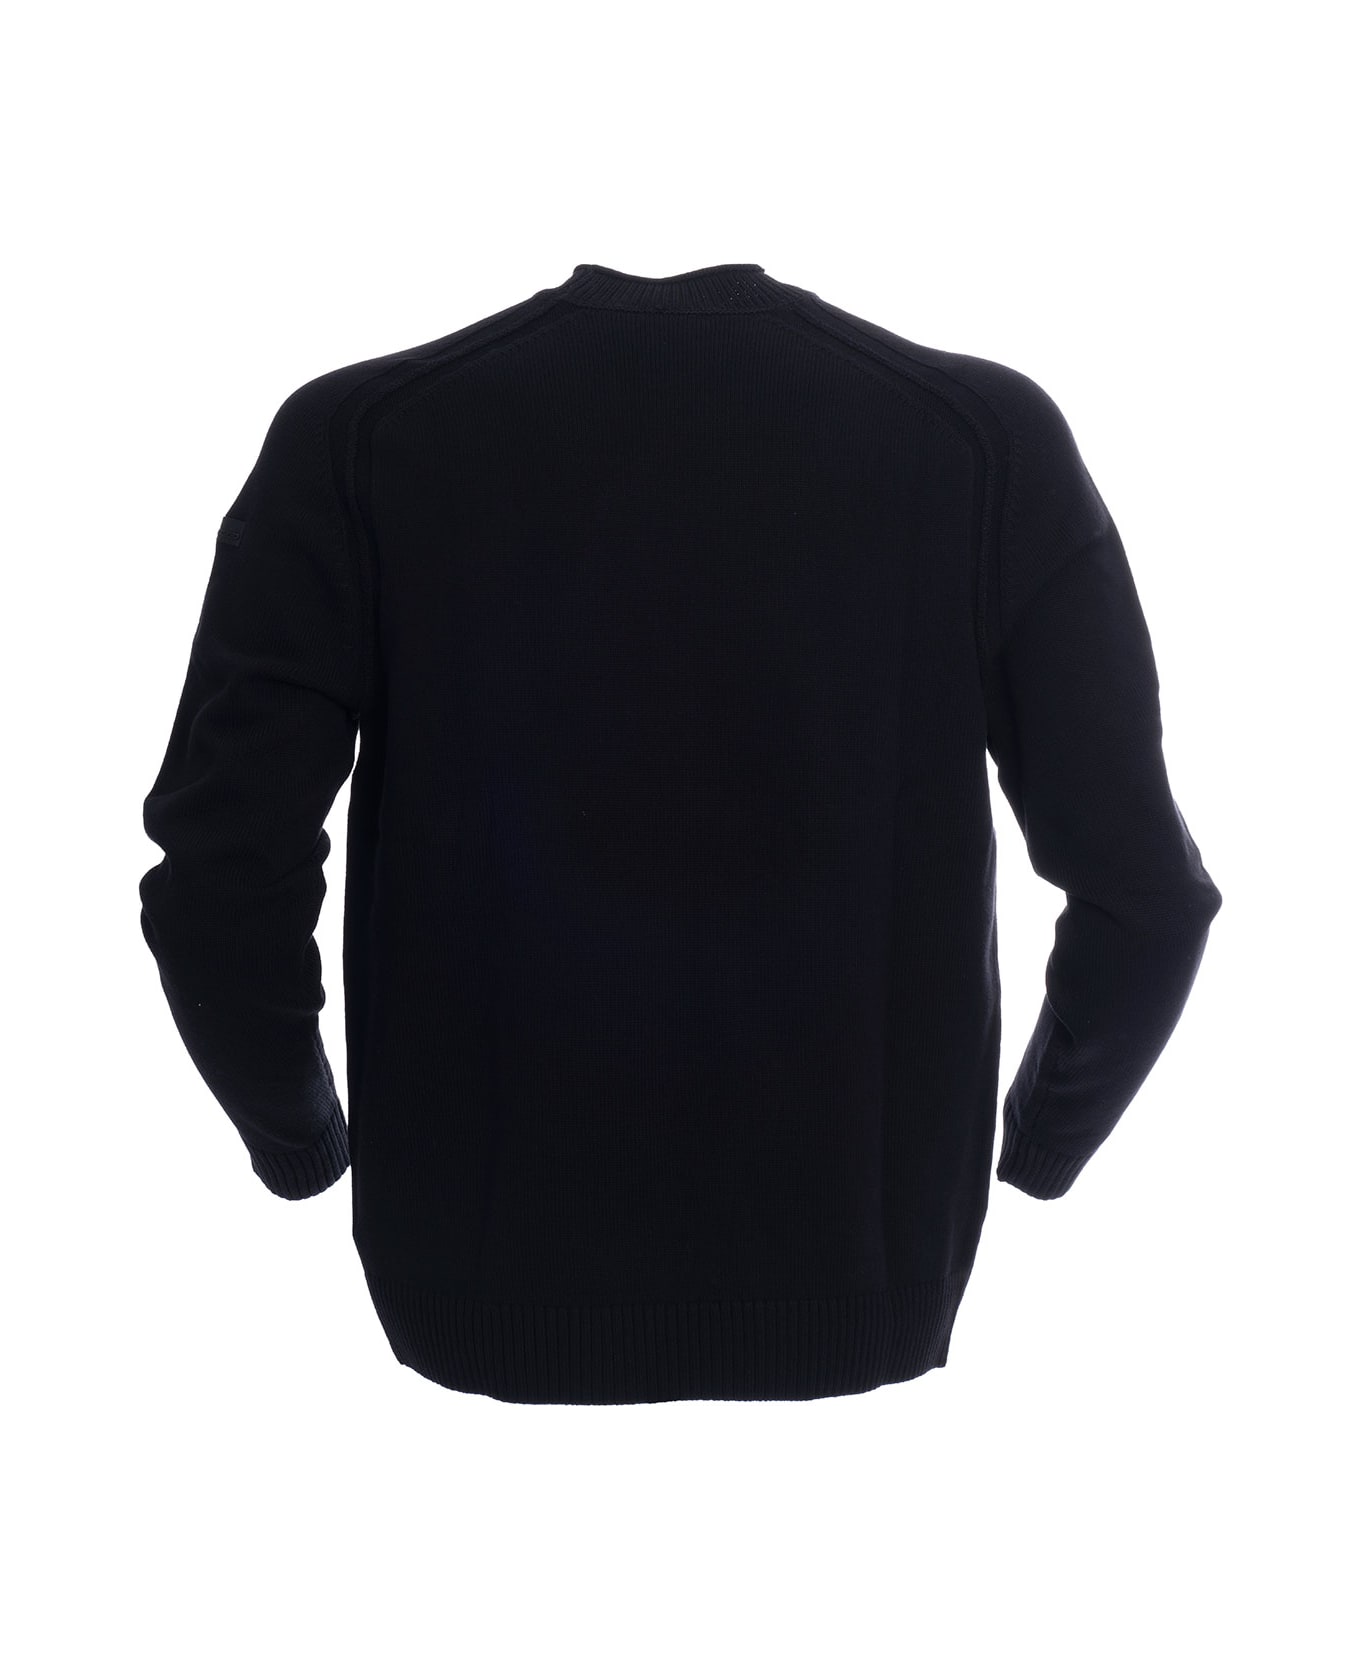 RRD - Roberto Ricci Design Cotton Sweater RRD - Roberto Ricci Design